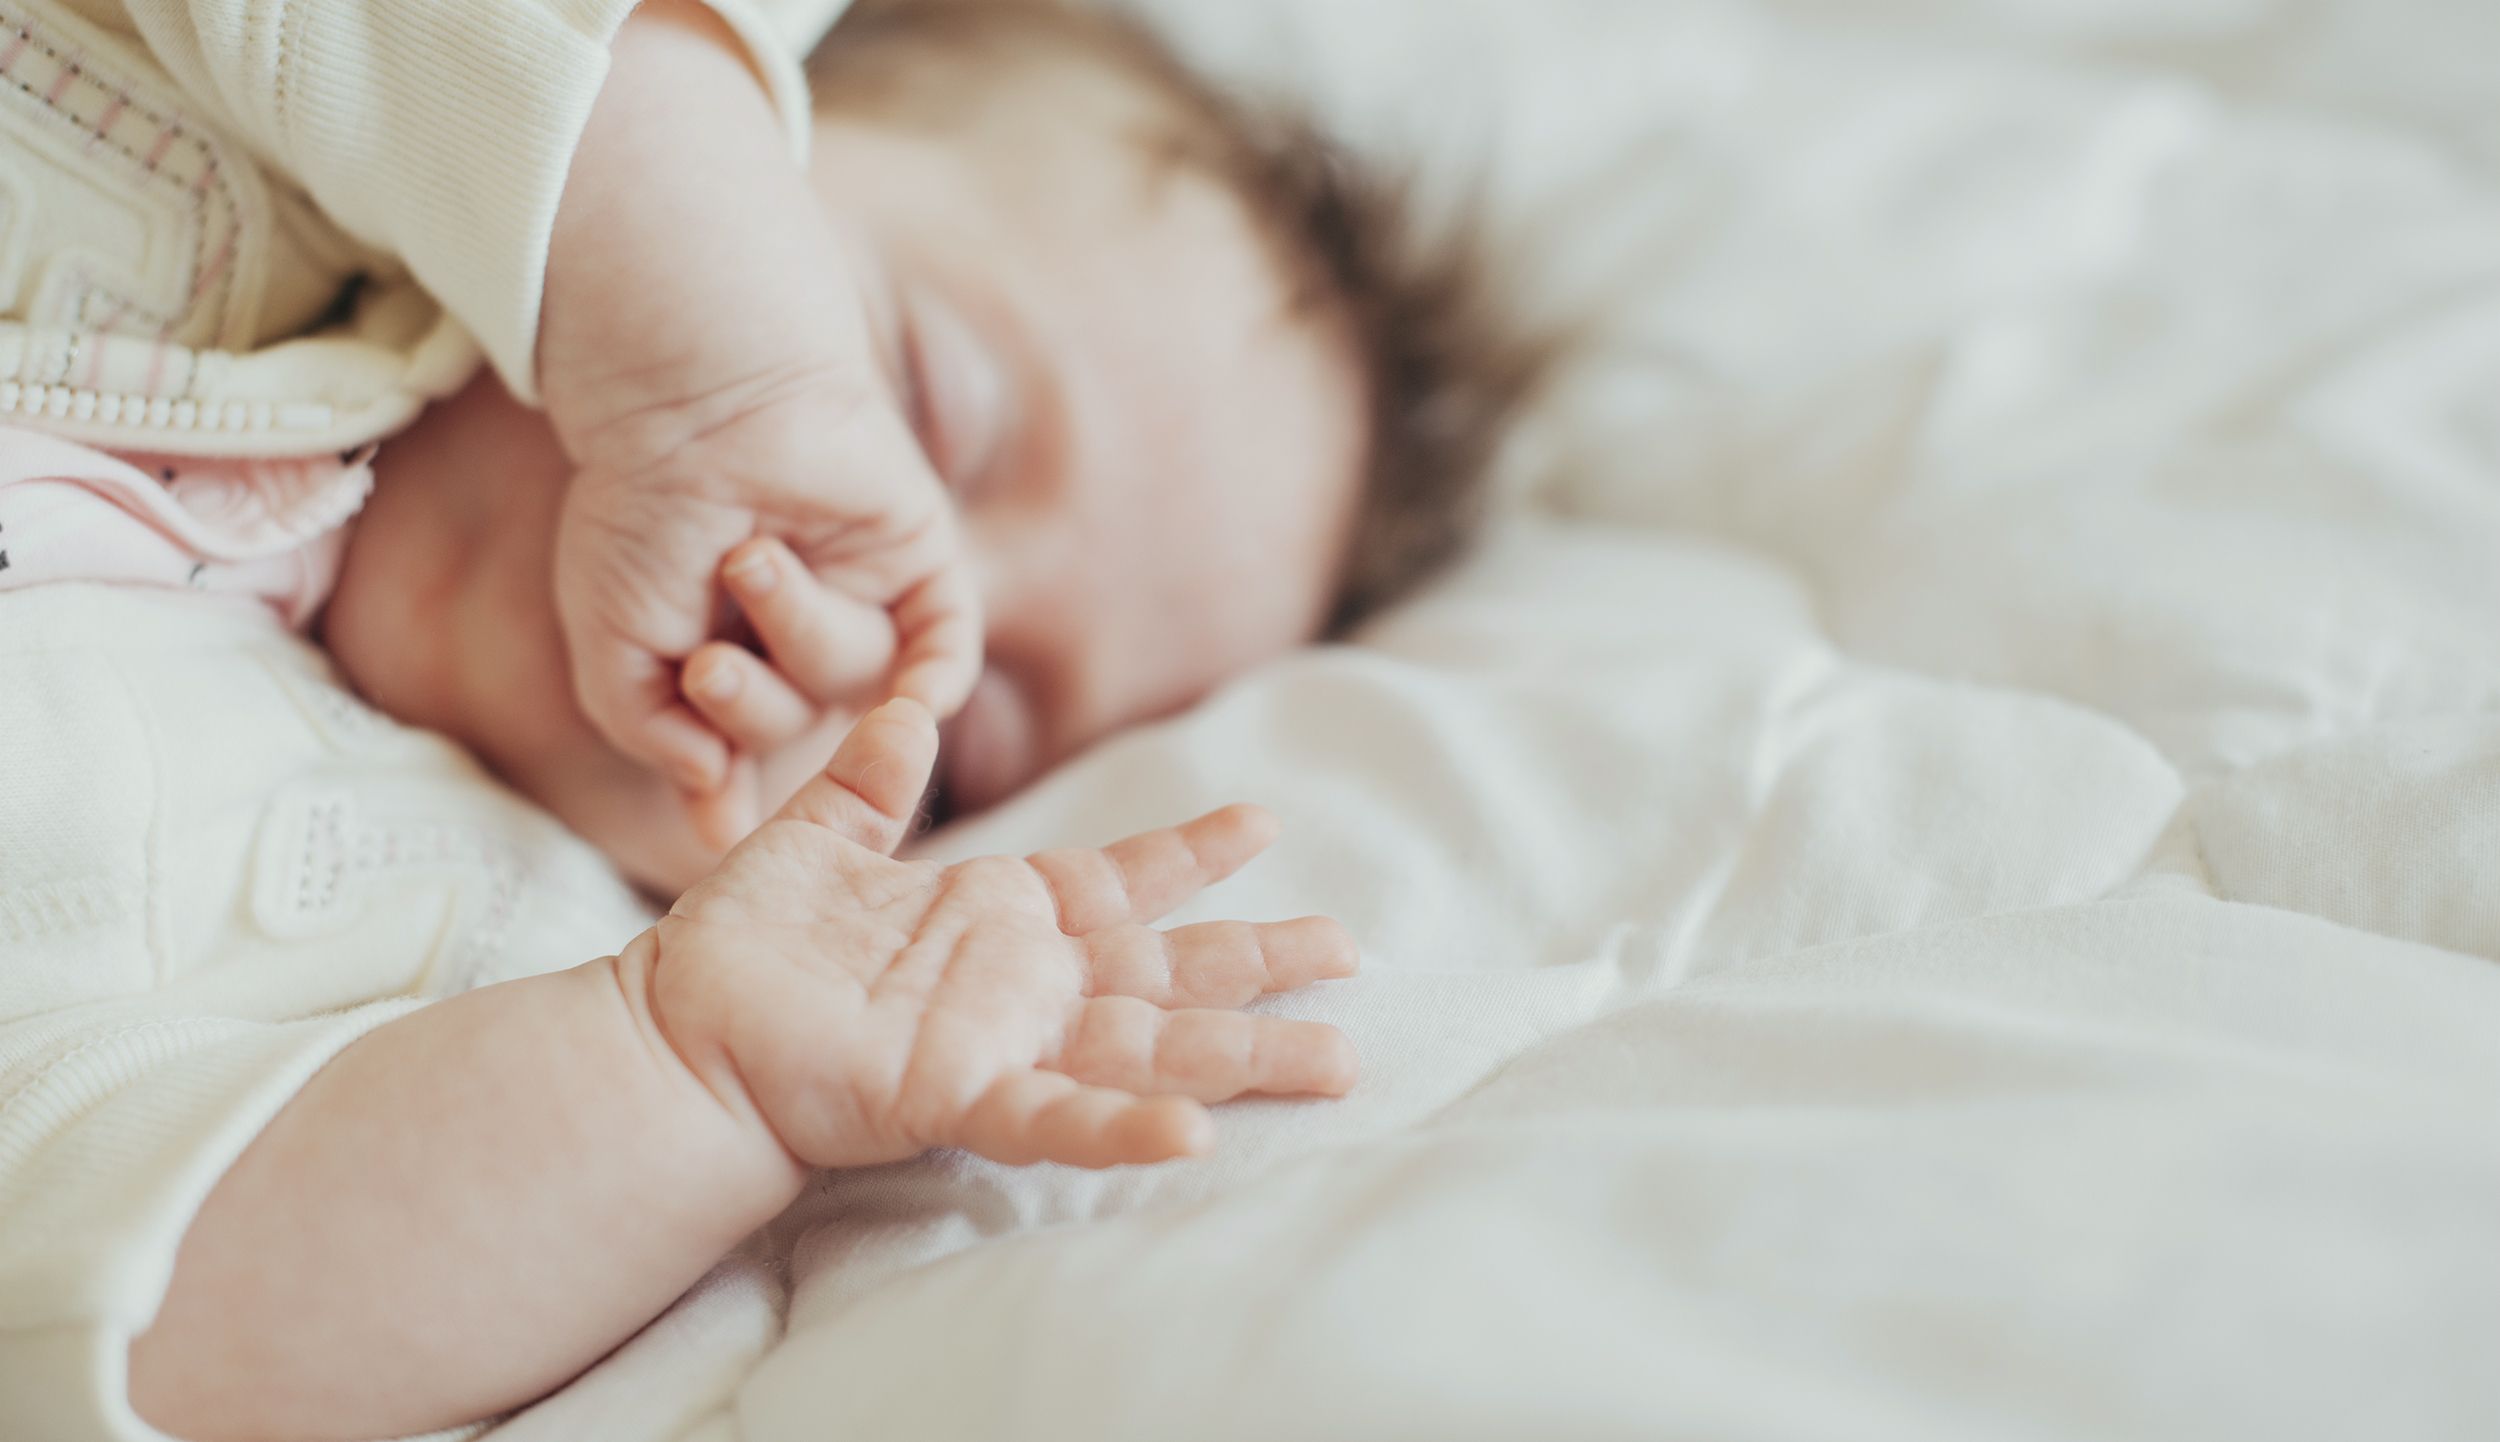 5 Common Baby Sleep Probl